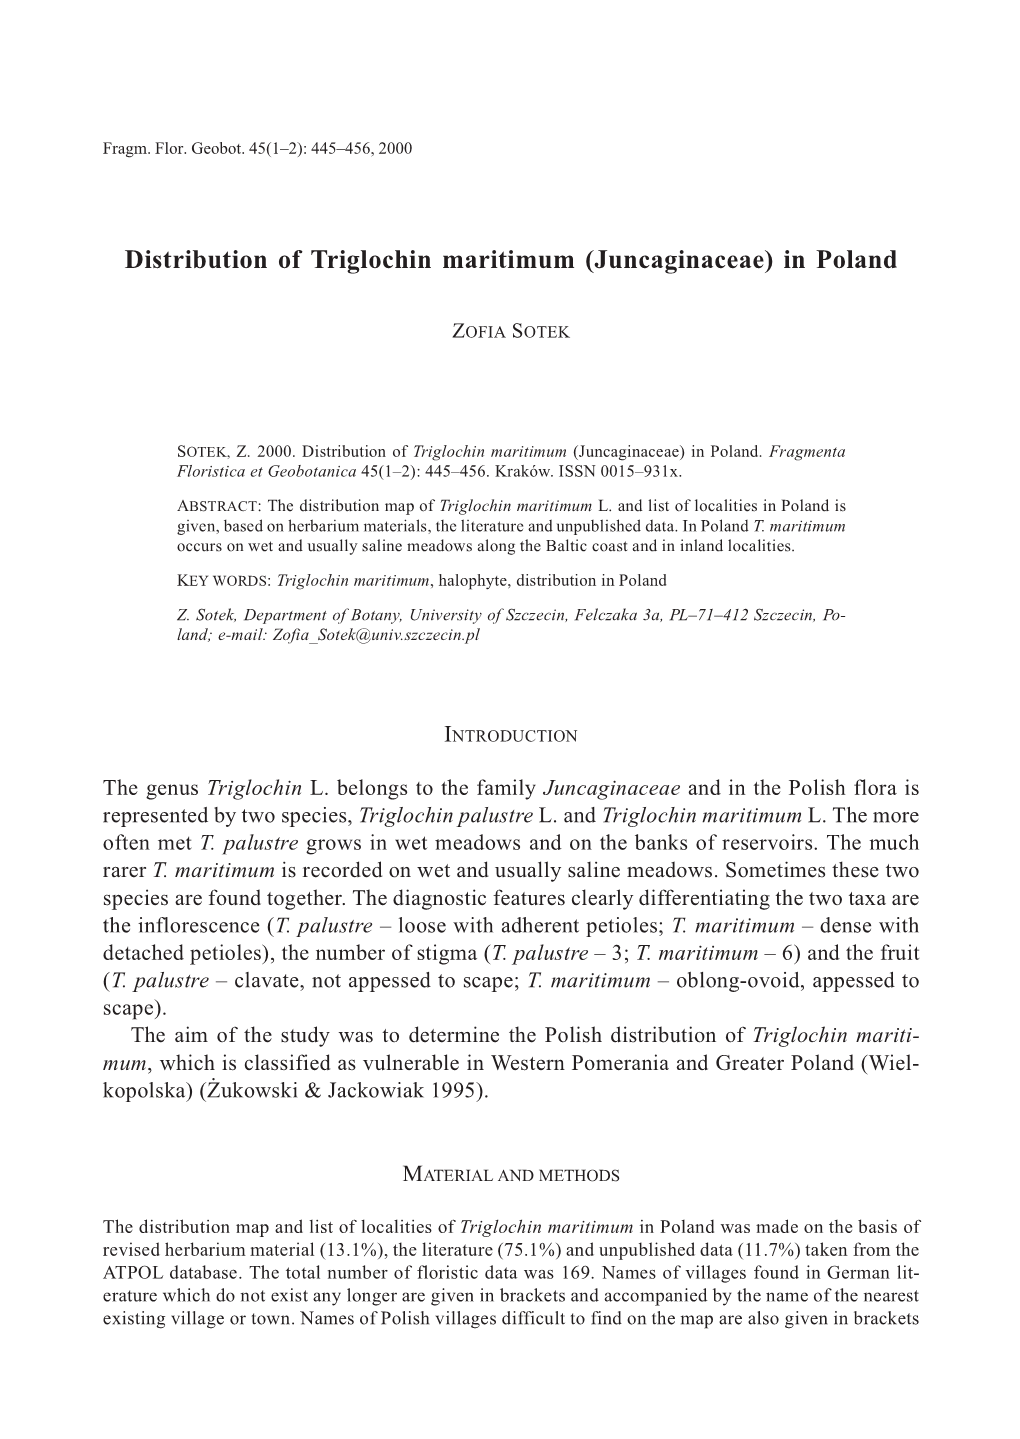 Distribution of Triglochin Maritimum (Juncaginaceae) in Poland